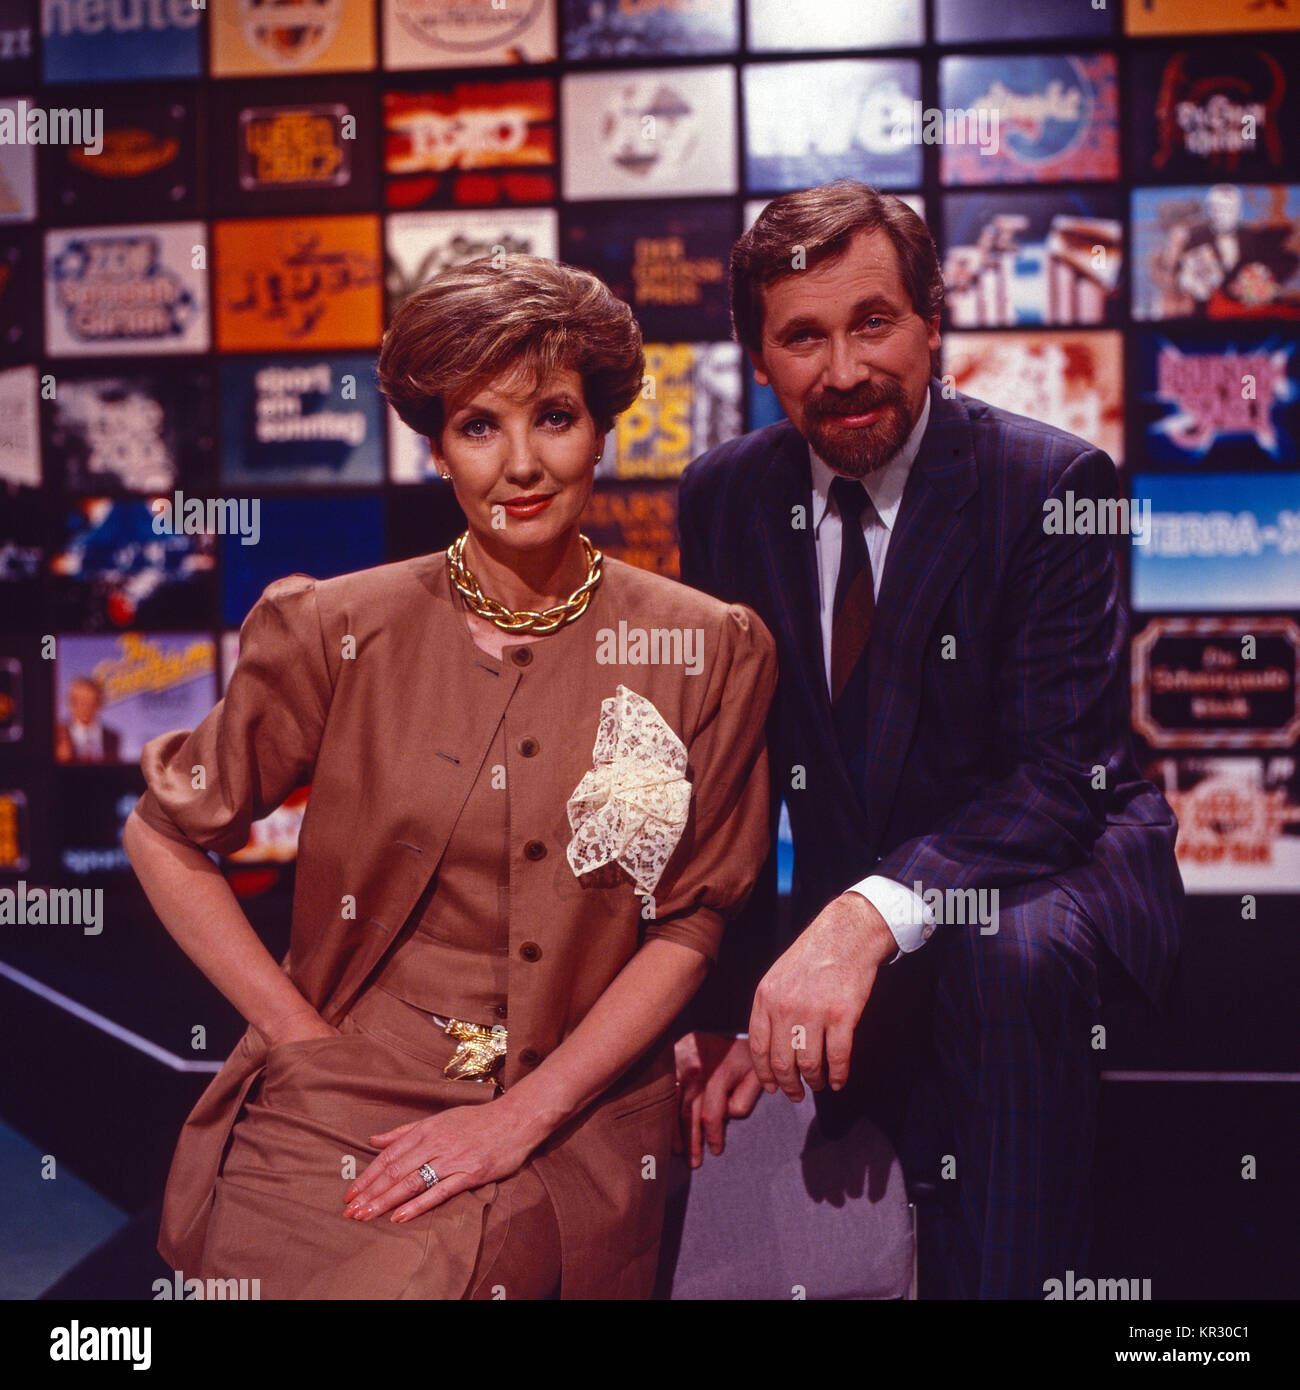 Tele-As, Rateshow ums Fernsehen, Deutschland 1987 - 1991, Moderatoren: Carolin Reiber, Pietro Rapp Foto Stock